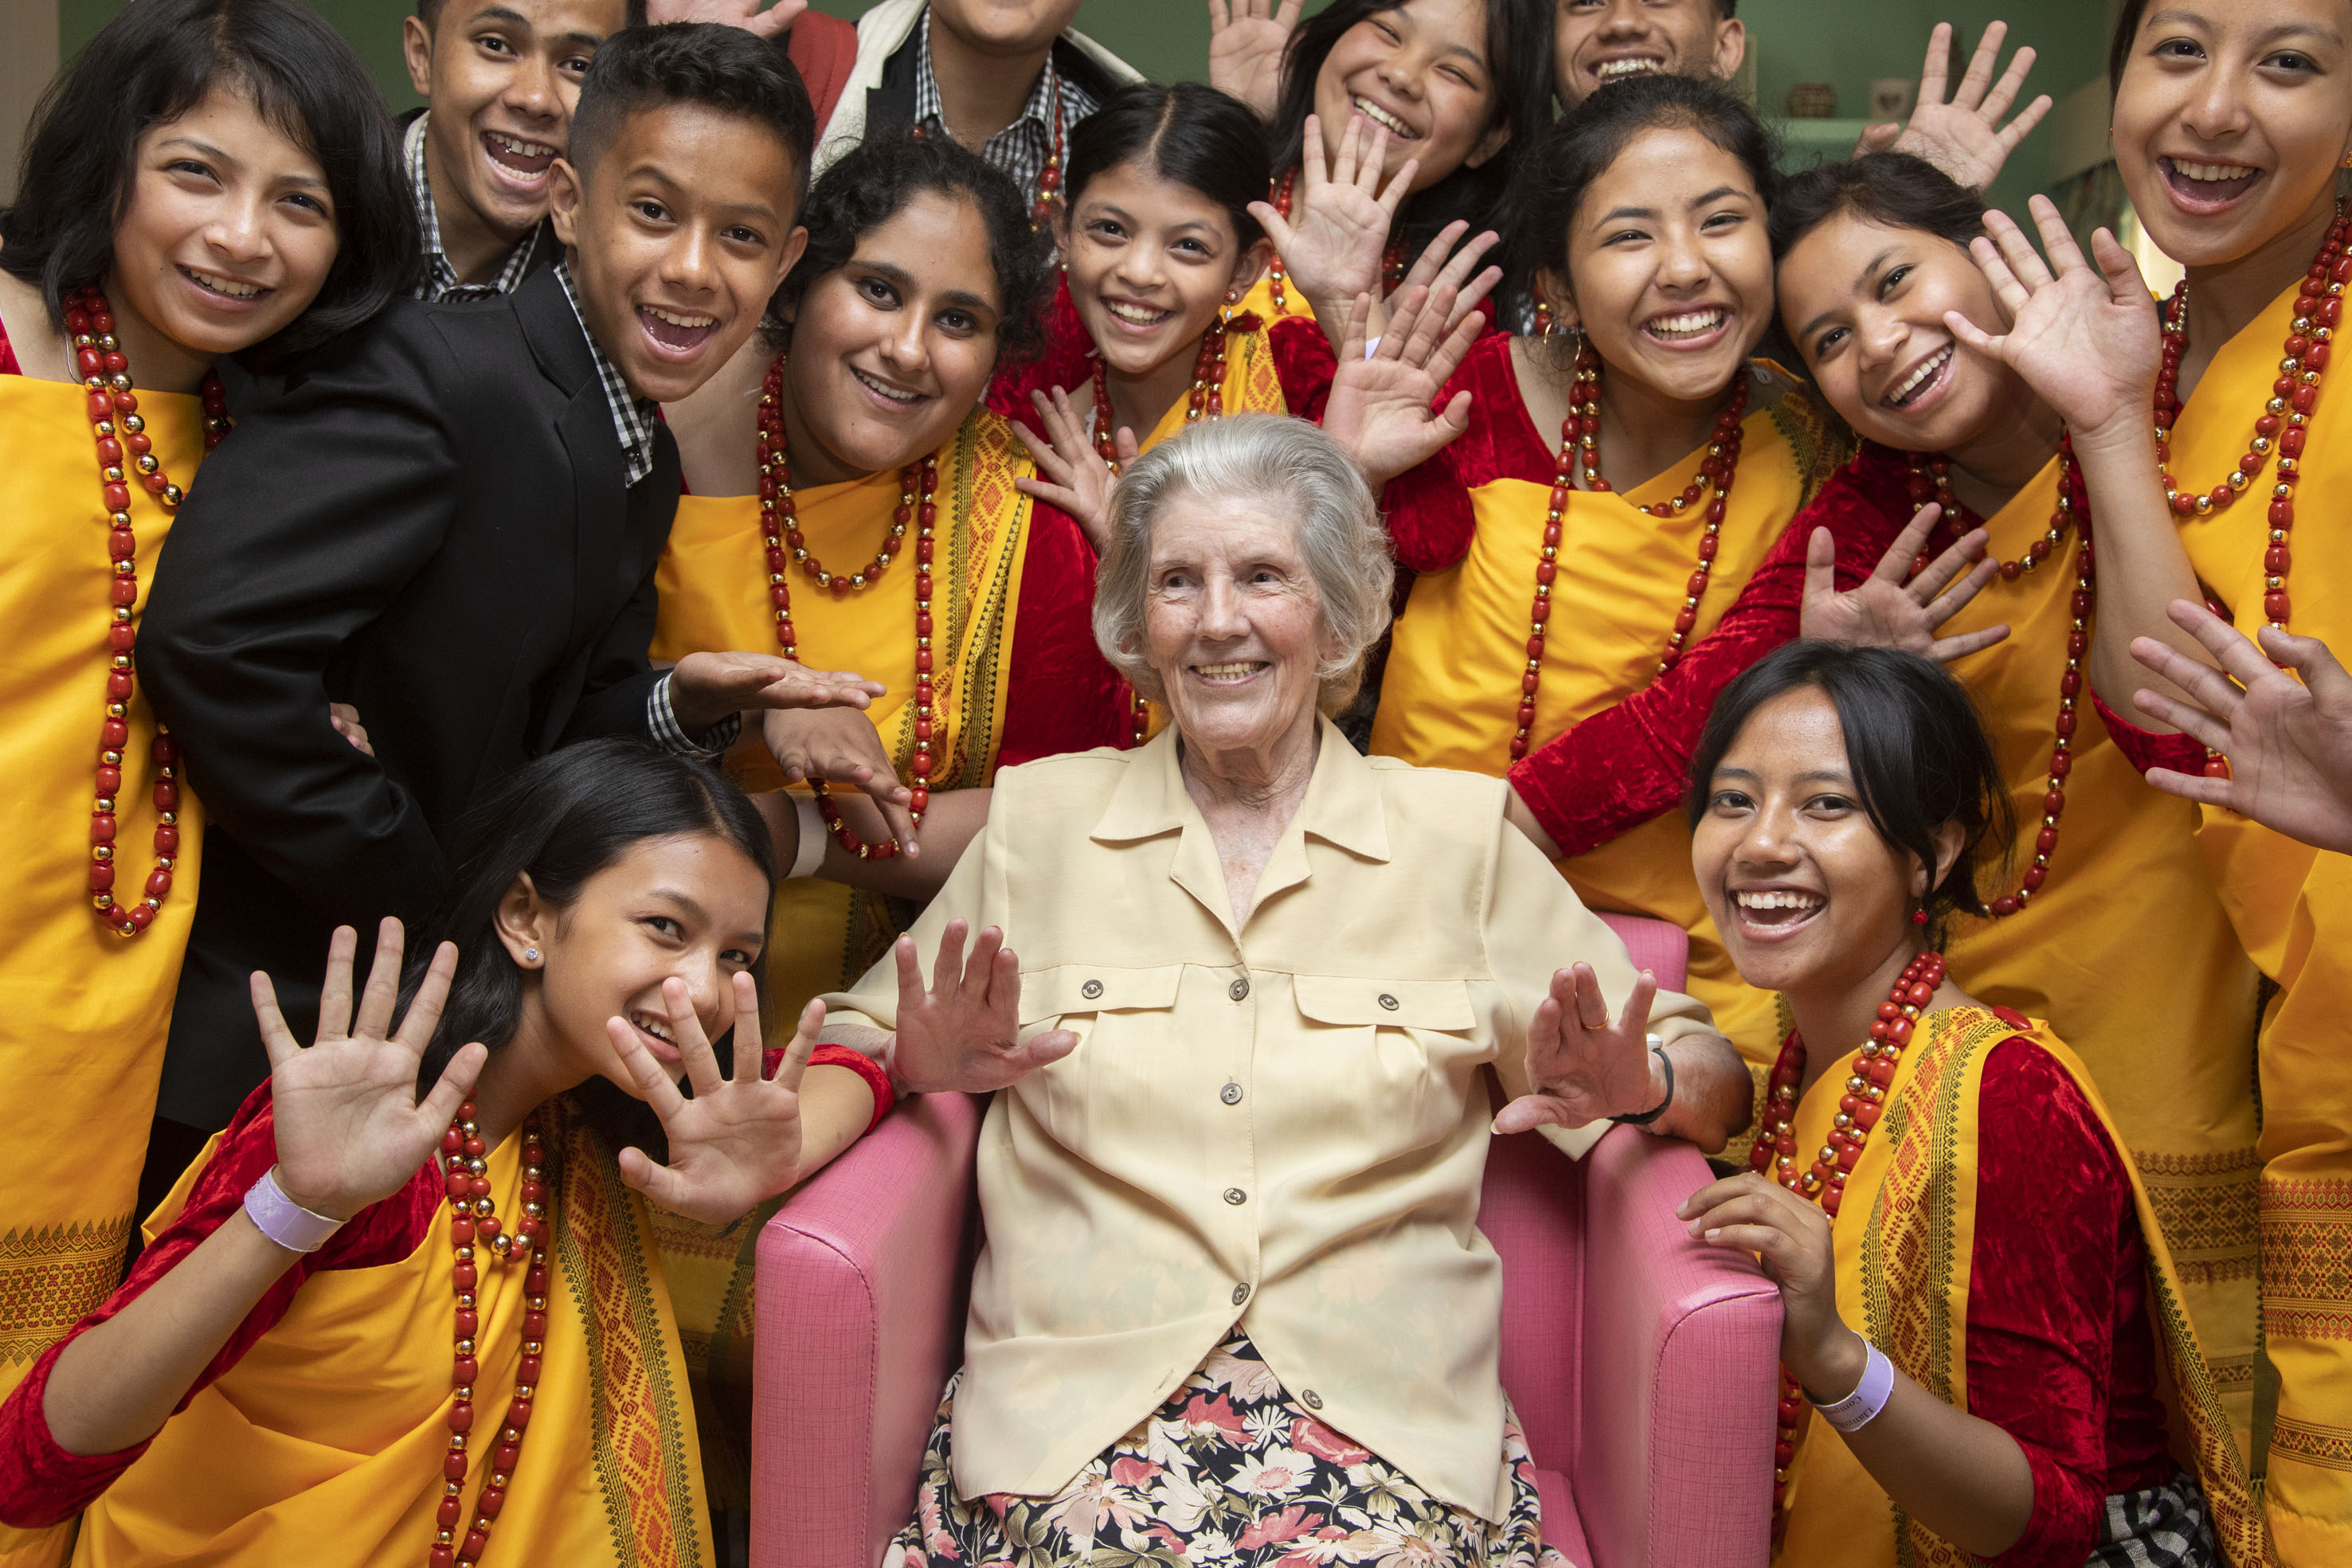 Indian choir brings joy to Nancy, 90